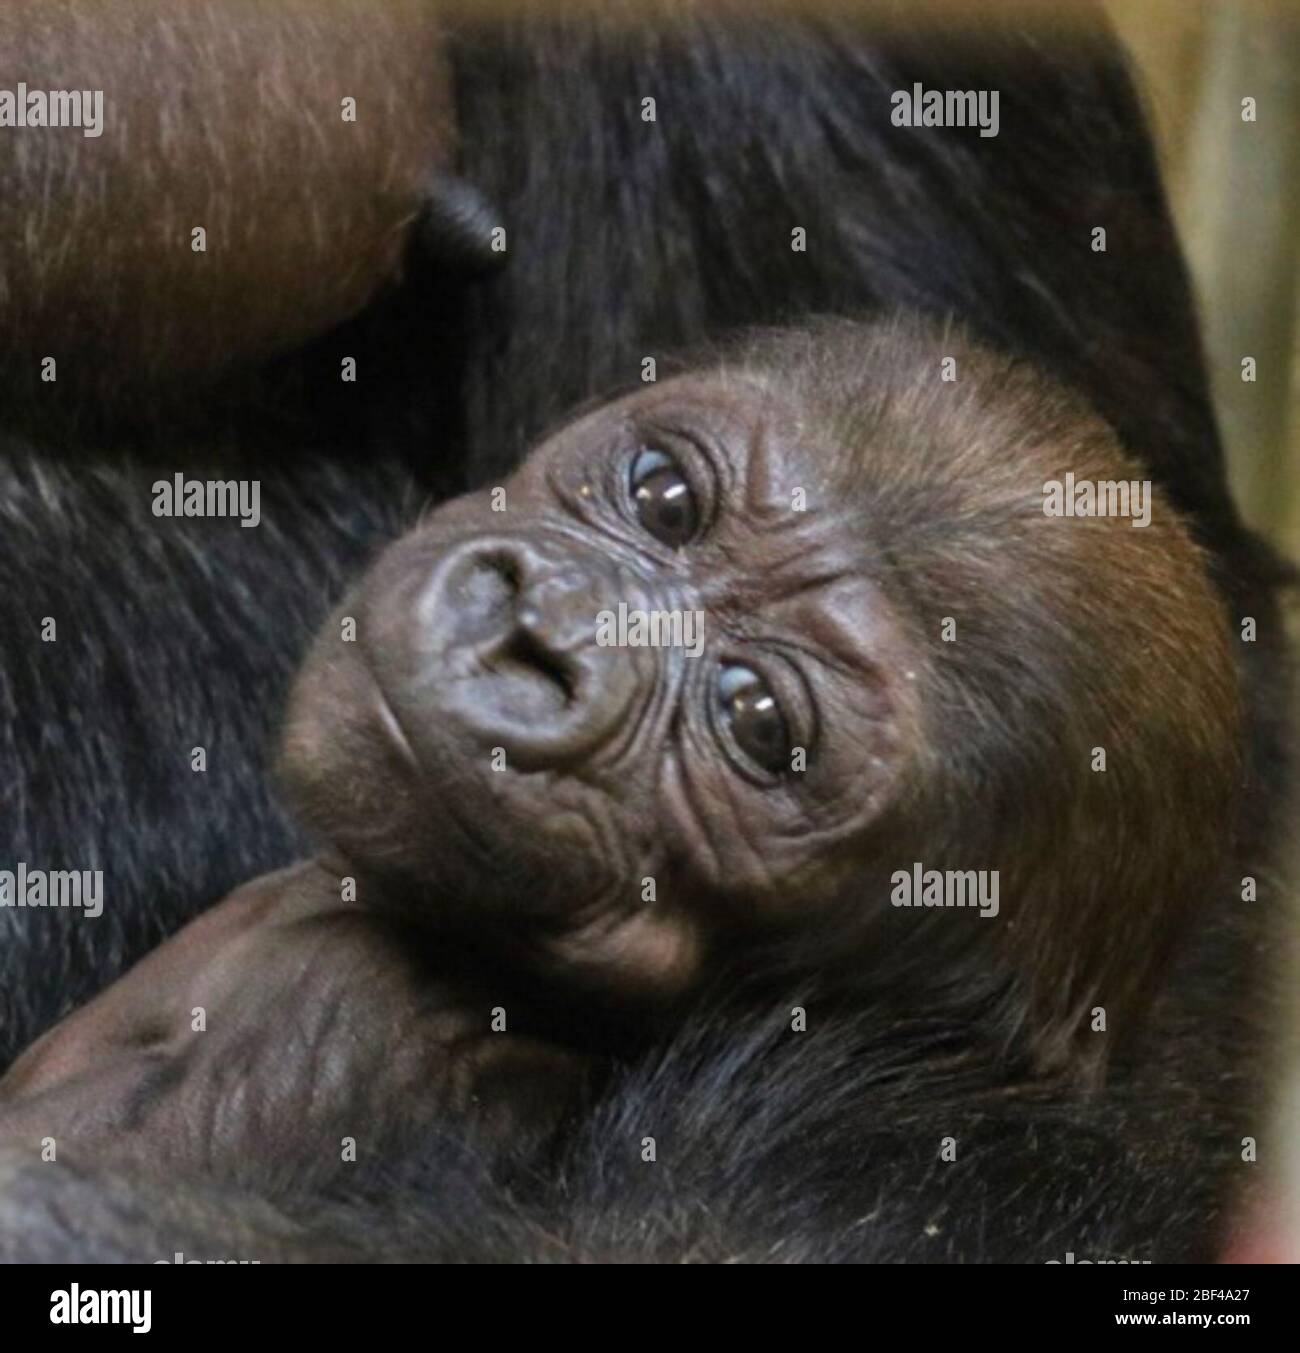 Lowland Gorilla. Primate,Great Ape,Ape,Species: gorilla,Genus: Gorilla,Family: Hominidae,Order: Primates,Class: Mammalia,Phylum: Chordata,Kingdom: Animalia,Lowland Gorilla,Western Gorilla,Moke,baby,young Stock Photo